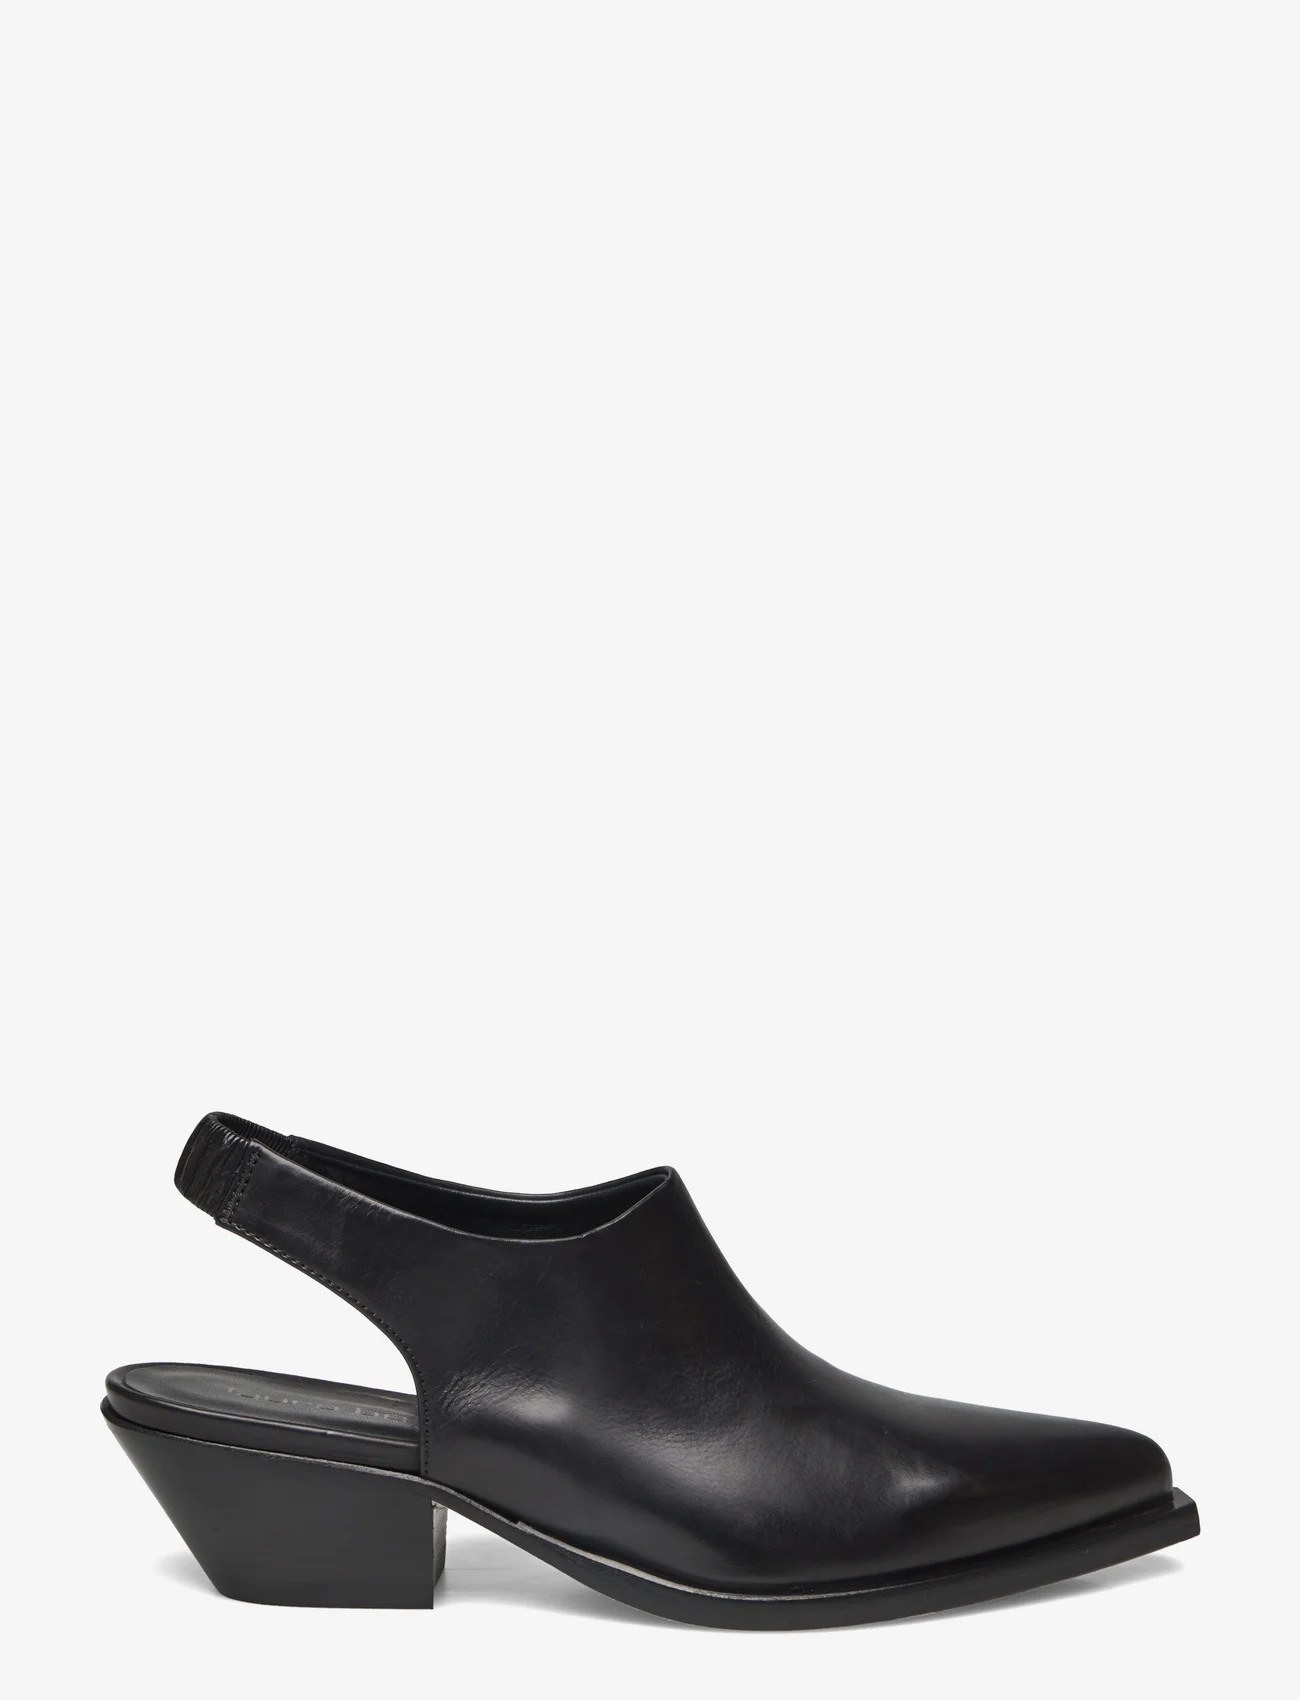 Laura Bellariva - shoes - slingbacks med hæl - black - 1